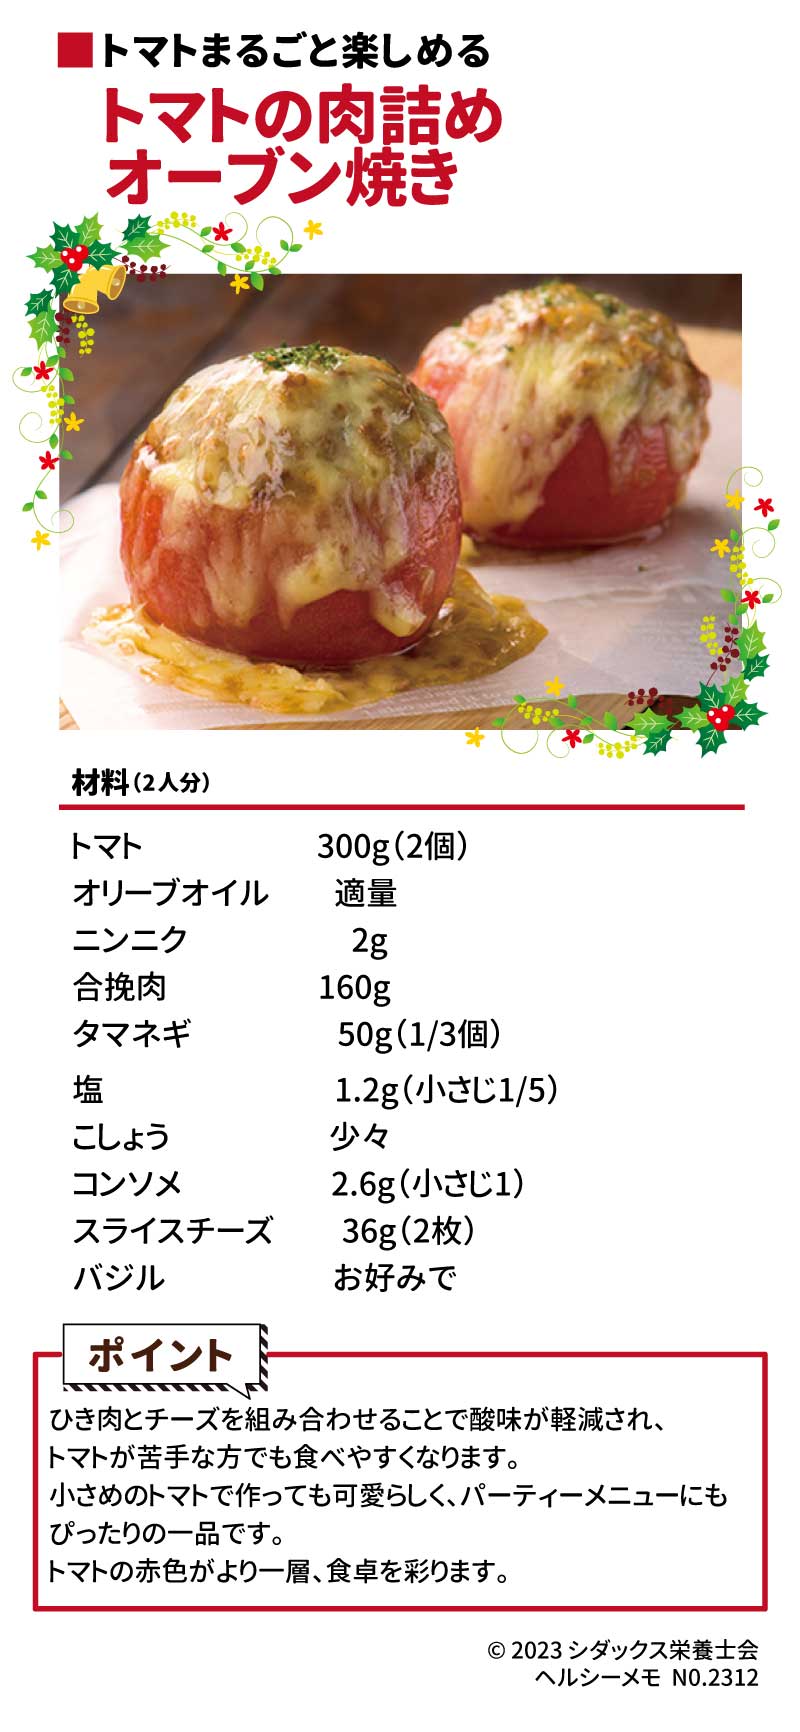 クリスマスの食卓を彩るレシピ トマト丸ごと楽しめる トマトの肉詰めオーブン焼き 材料（2人分）　　　　　　 トマト　　　　  300g（2個） オリーブオイル　適量 ニンニク　　　　  2g 合挽肉　　　　  160g タマネギ　  　　  50g（1/3個） 塩　　　　 　　  1.2g（小さじ1/5） こしょう　　　　少々 コンソメ　 　　  2.6g（小さじ1） スライスチーズ    36g（2枚）  バジル　　　　　お好みで ポイント：ひき肉とチーズを組み合わせることで酸味が軽減され、トマトが苦手な方でも食べやすくなります。小さめのトマトで作っても可愛らしく、パーティーメニューにもぴったりの一品です。トマトの赤がより一層、食卓を彩ります。